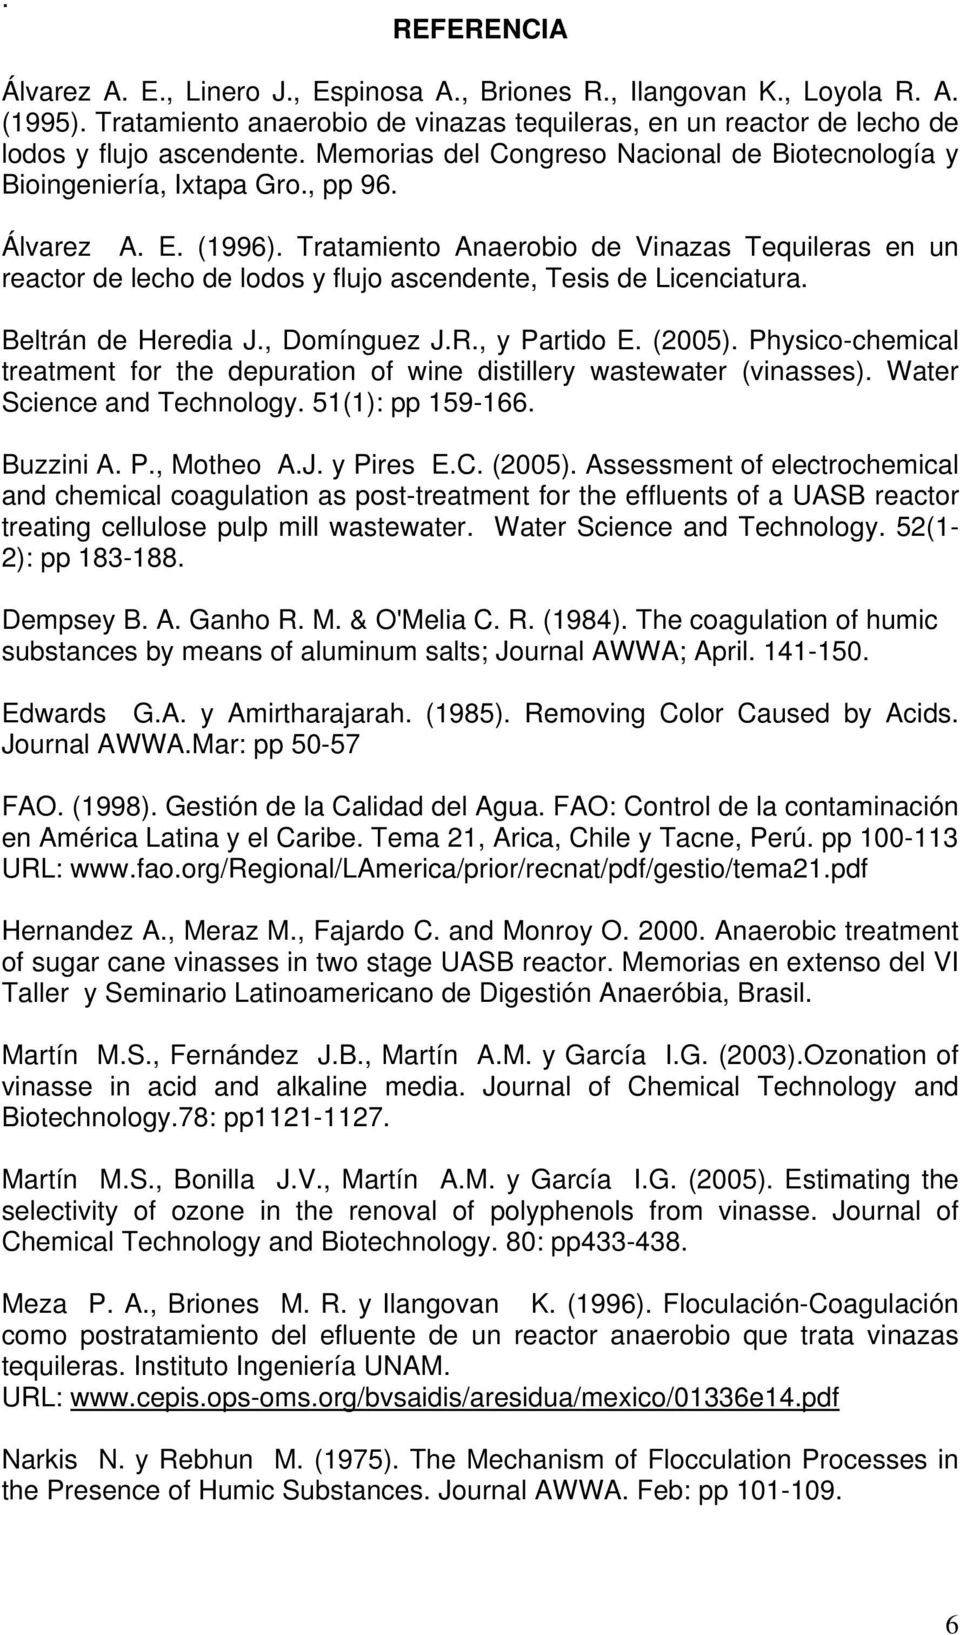 Tratamiento Anaerobio de Vinazas Tequileras en un reactor de lecho de lodos y flujo ascendente, Tesis de Licenciatura. Beltrán de Heredia J., Domínguez J.R., y Partido E. (2005).